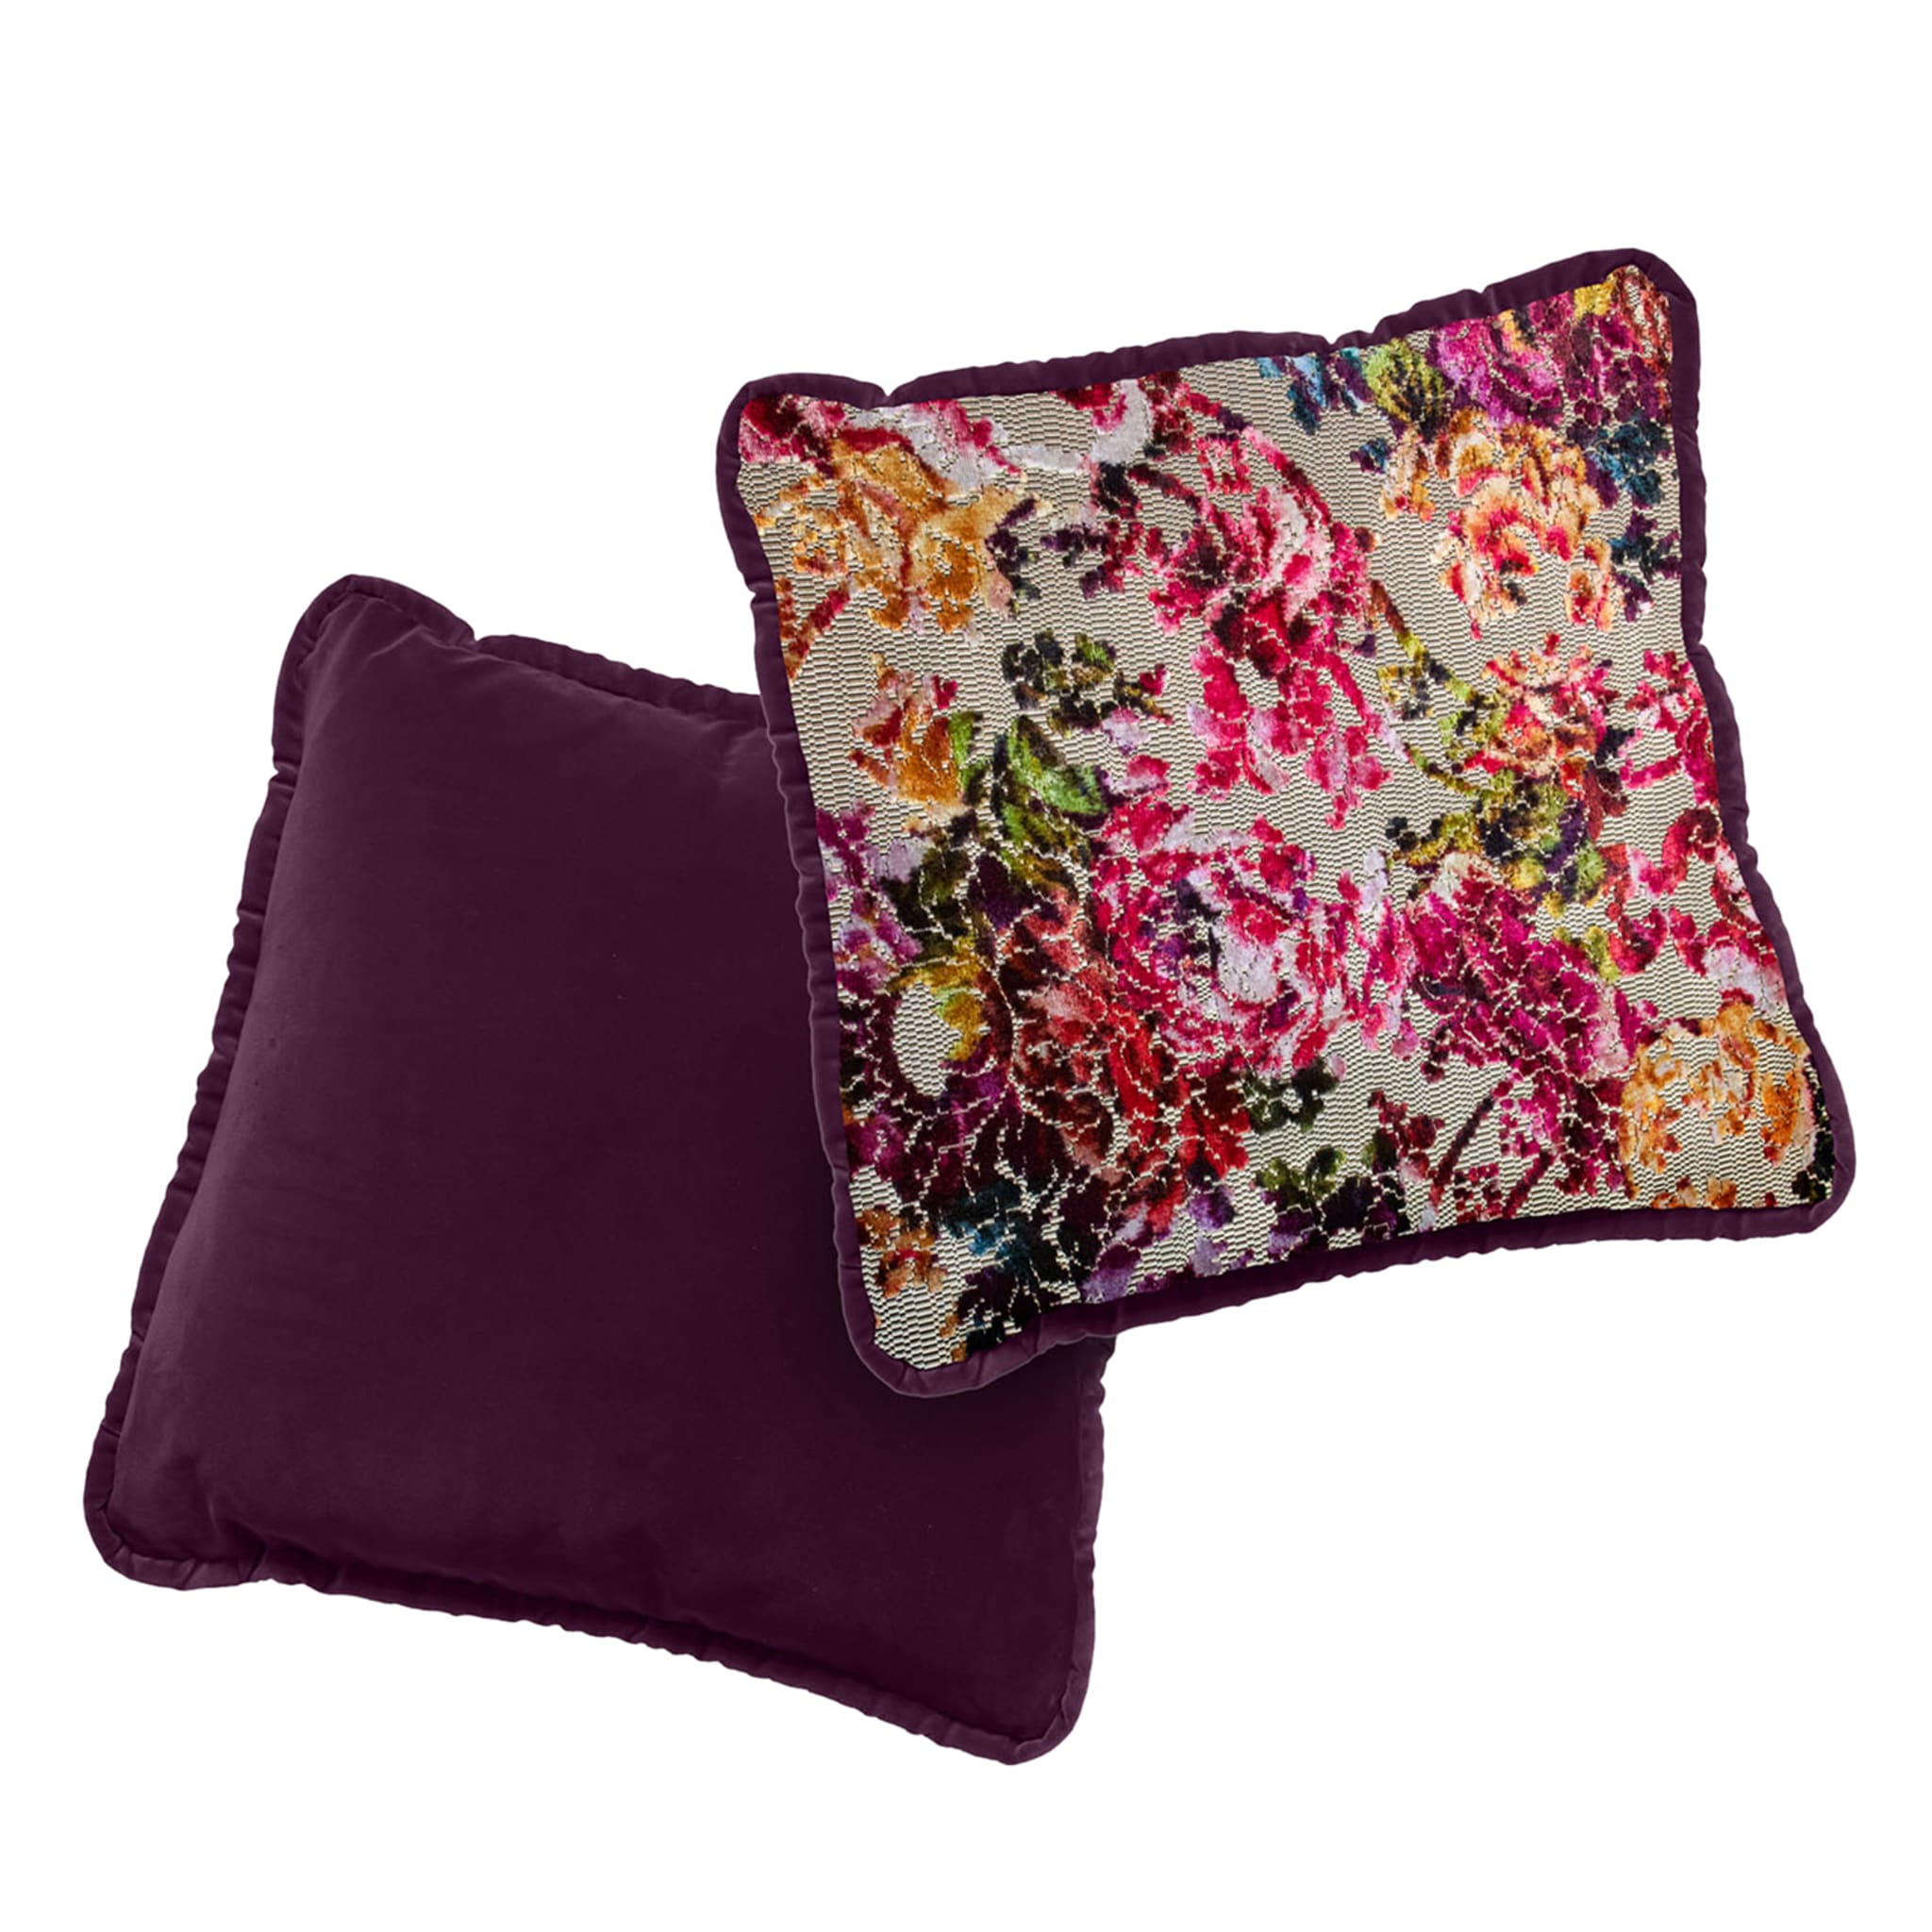 Flower Fantasy and Bordeaux Velvet Reversible Cushion - Alternative view 1